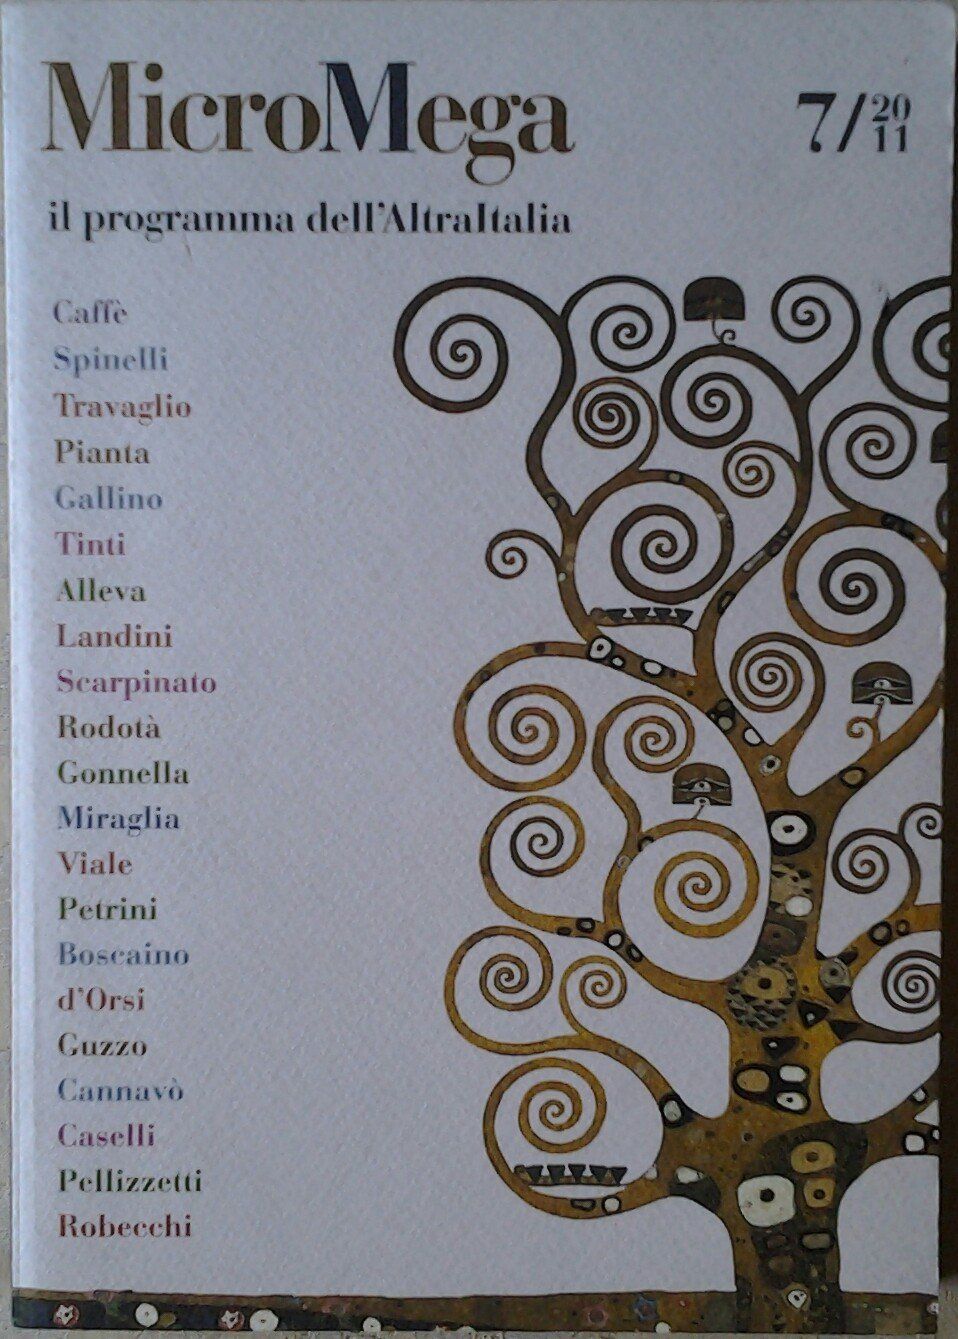 MicroMega 7/2011. Il programma dell'Altra Italia